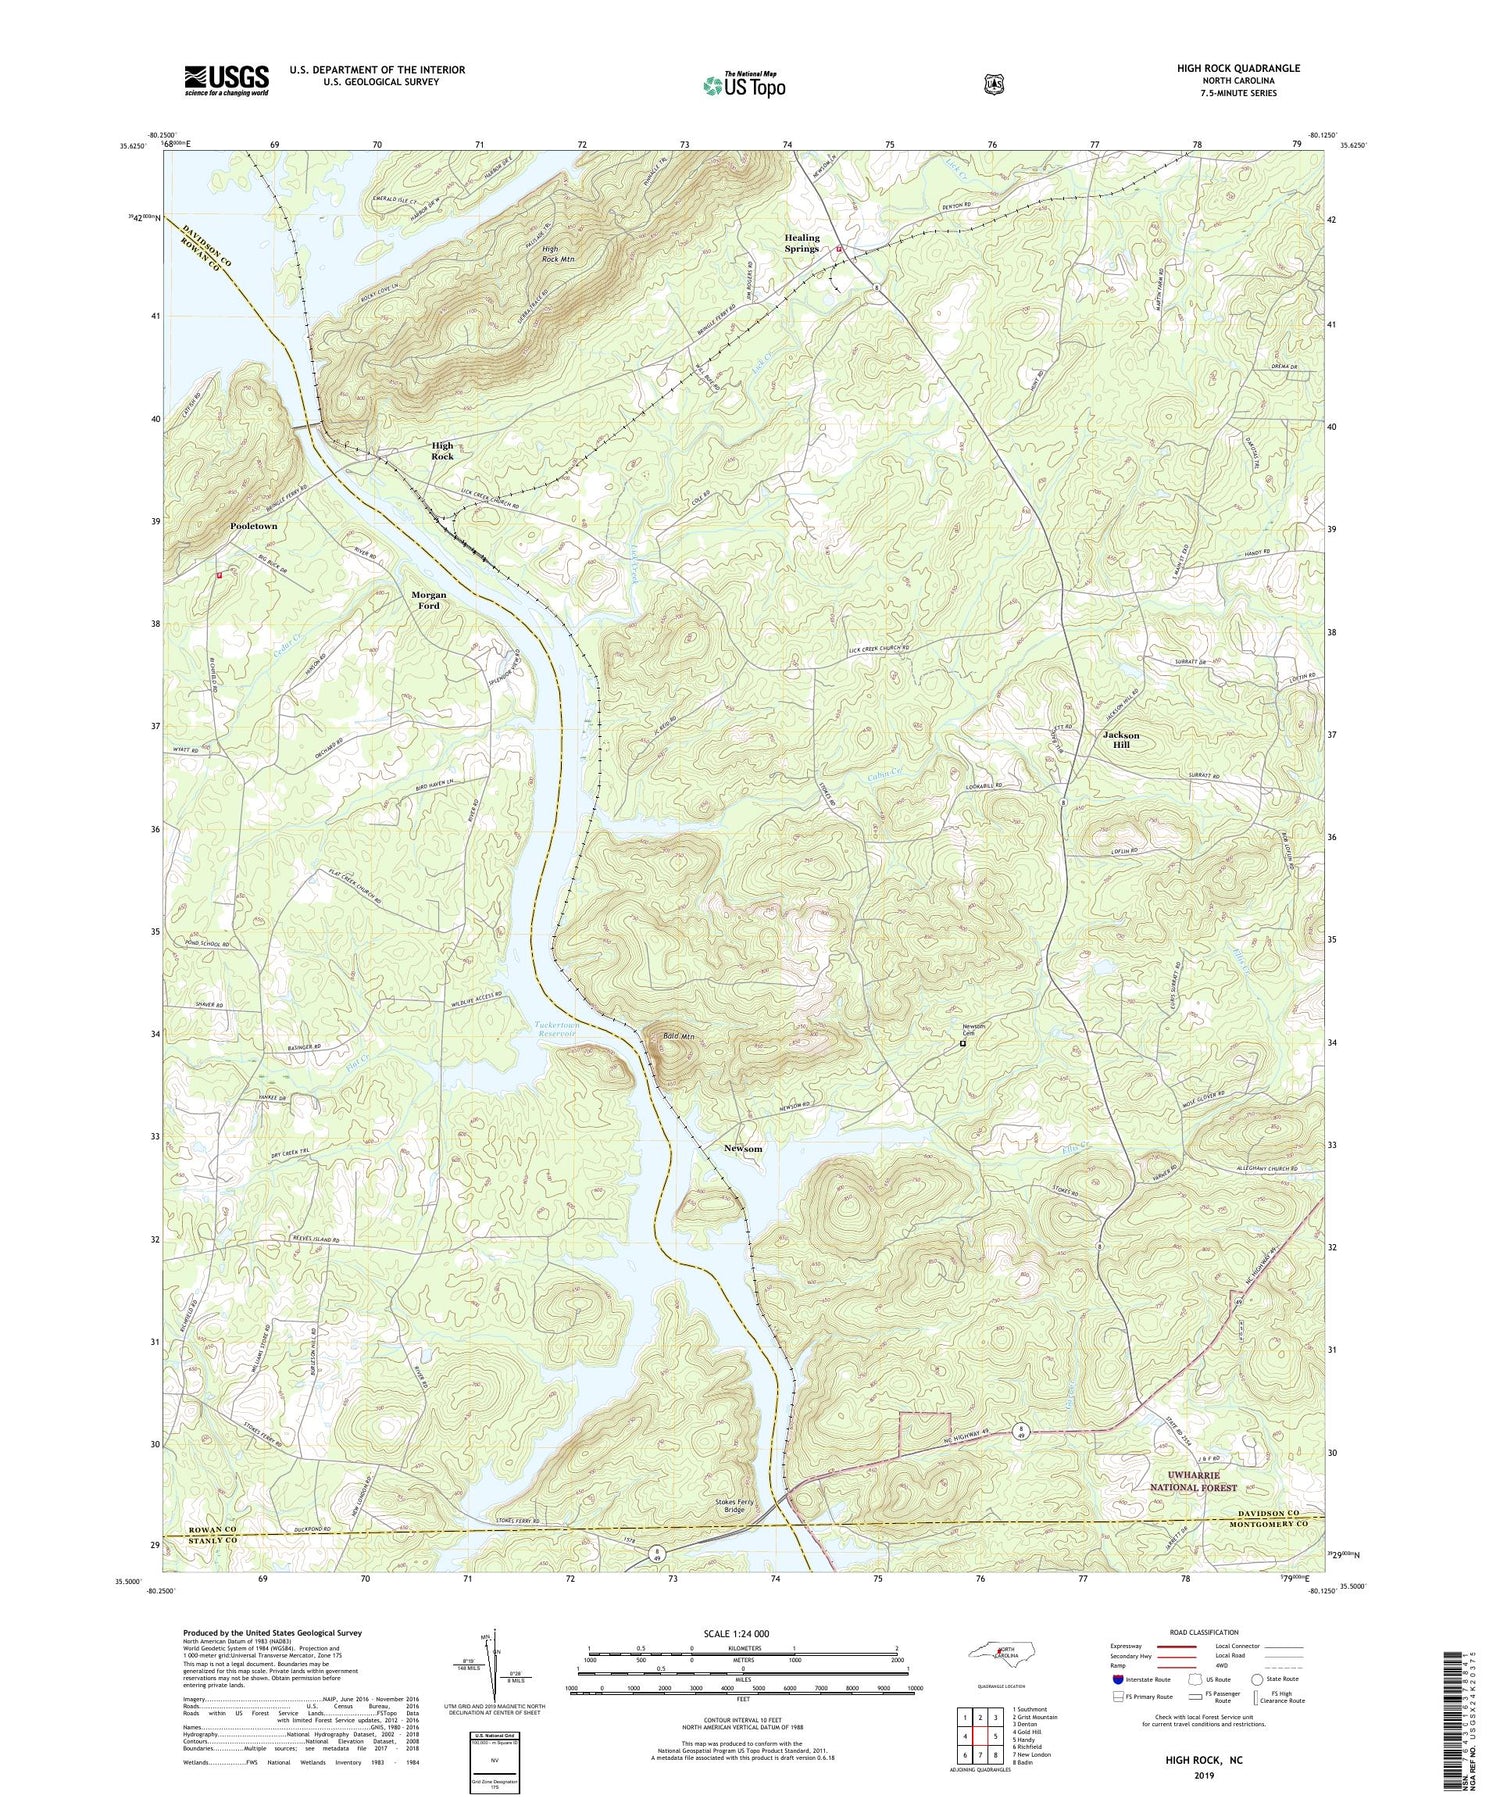 High Rock North Carolina US Topo Map Image